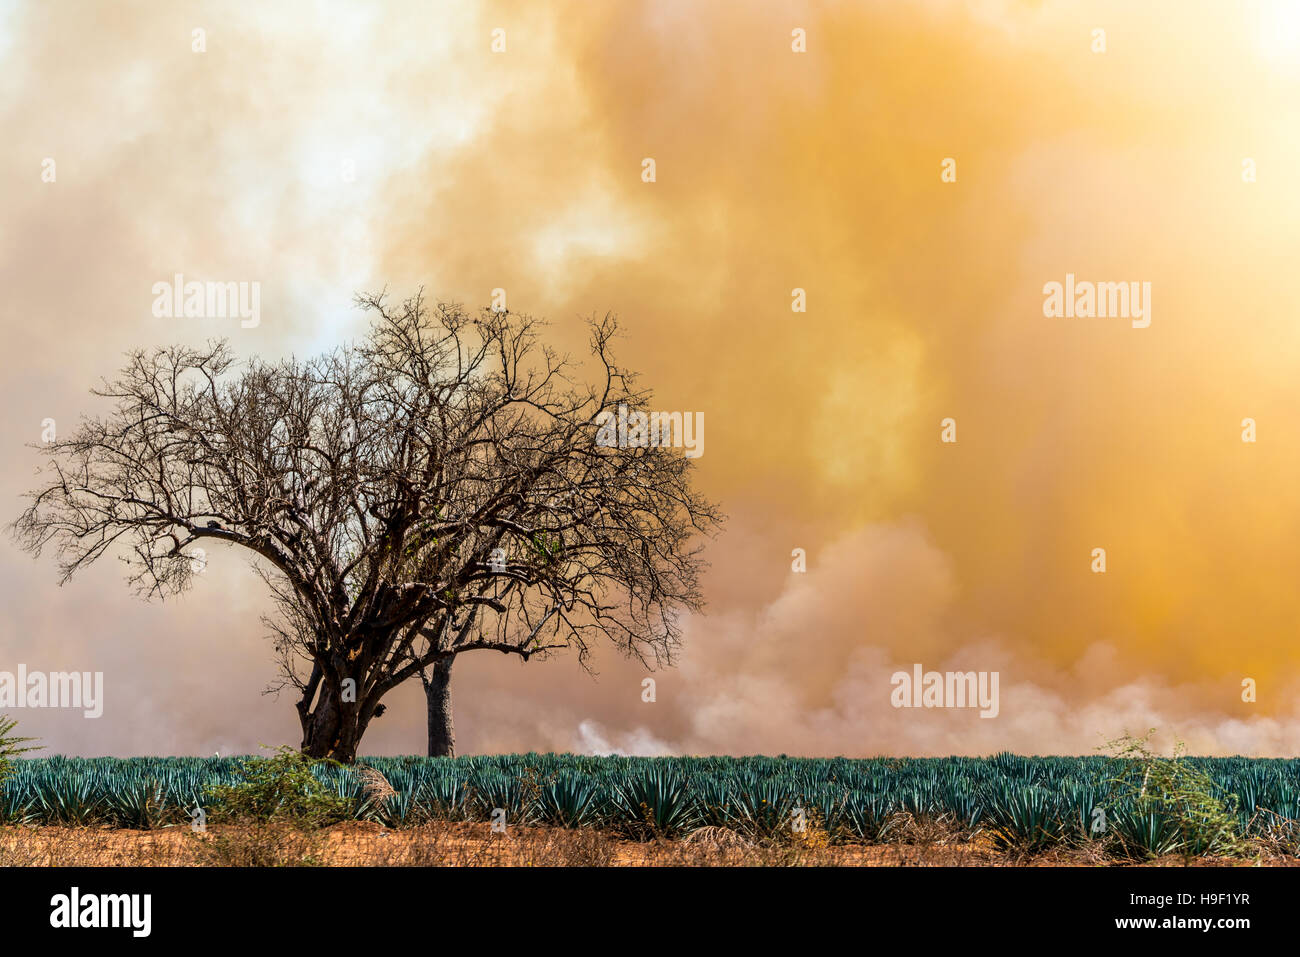 La fumée des incendies terre clearning créant une belle lueur orange dans le ciel Banque D'Images